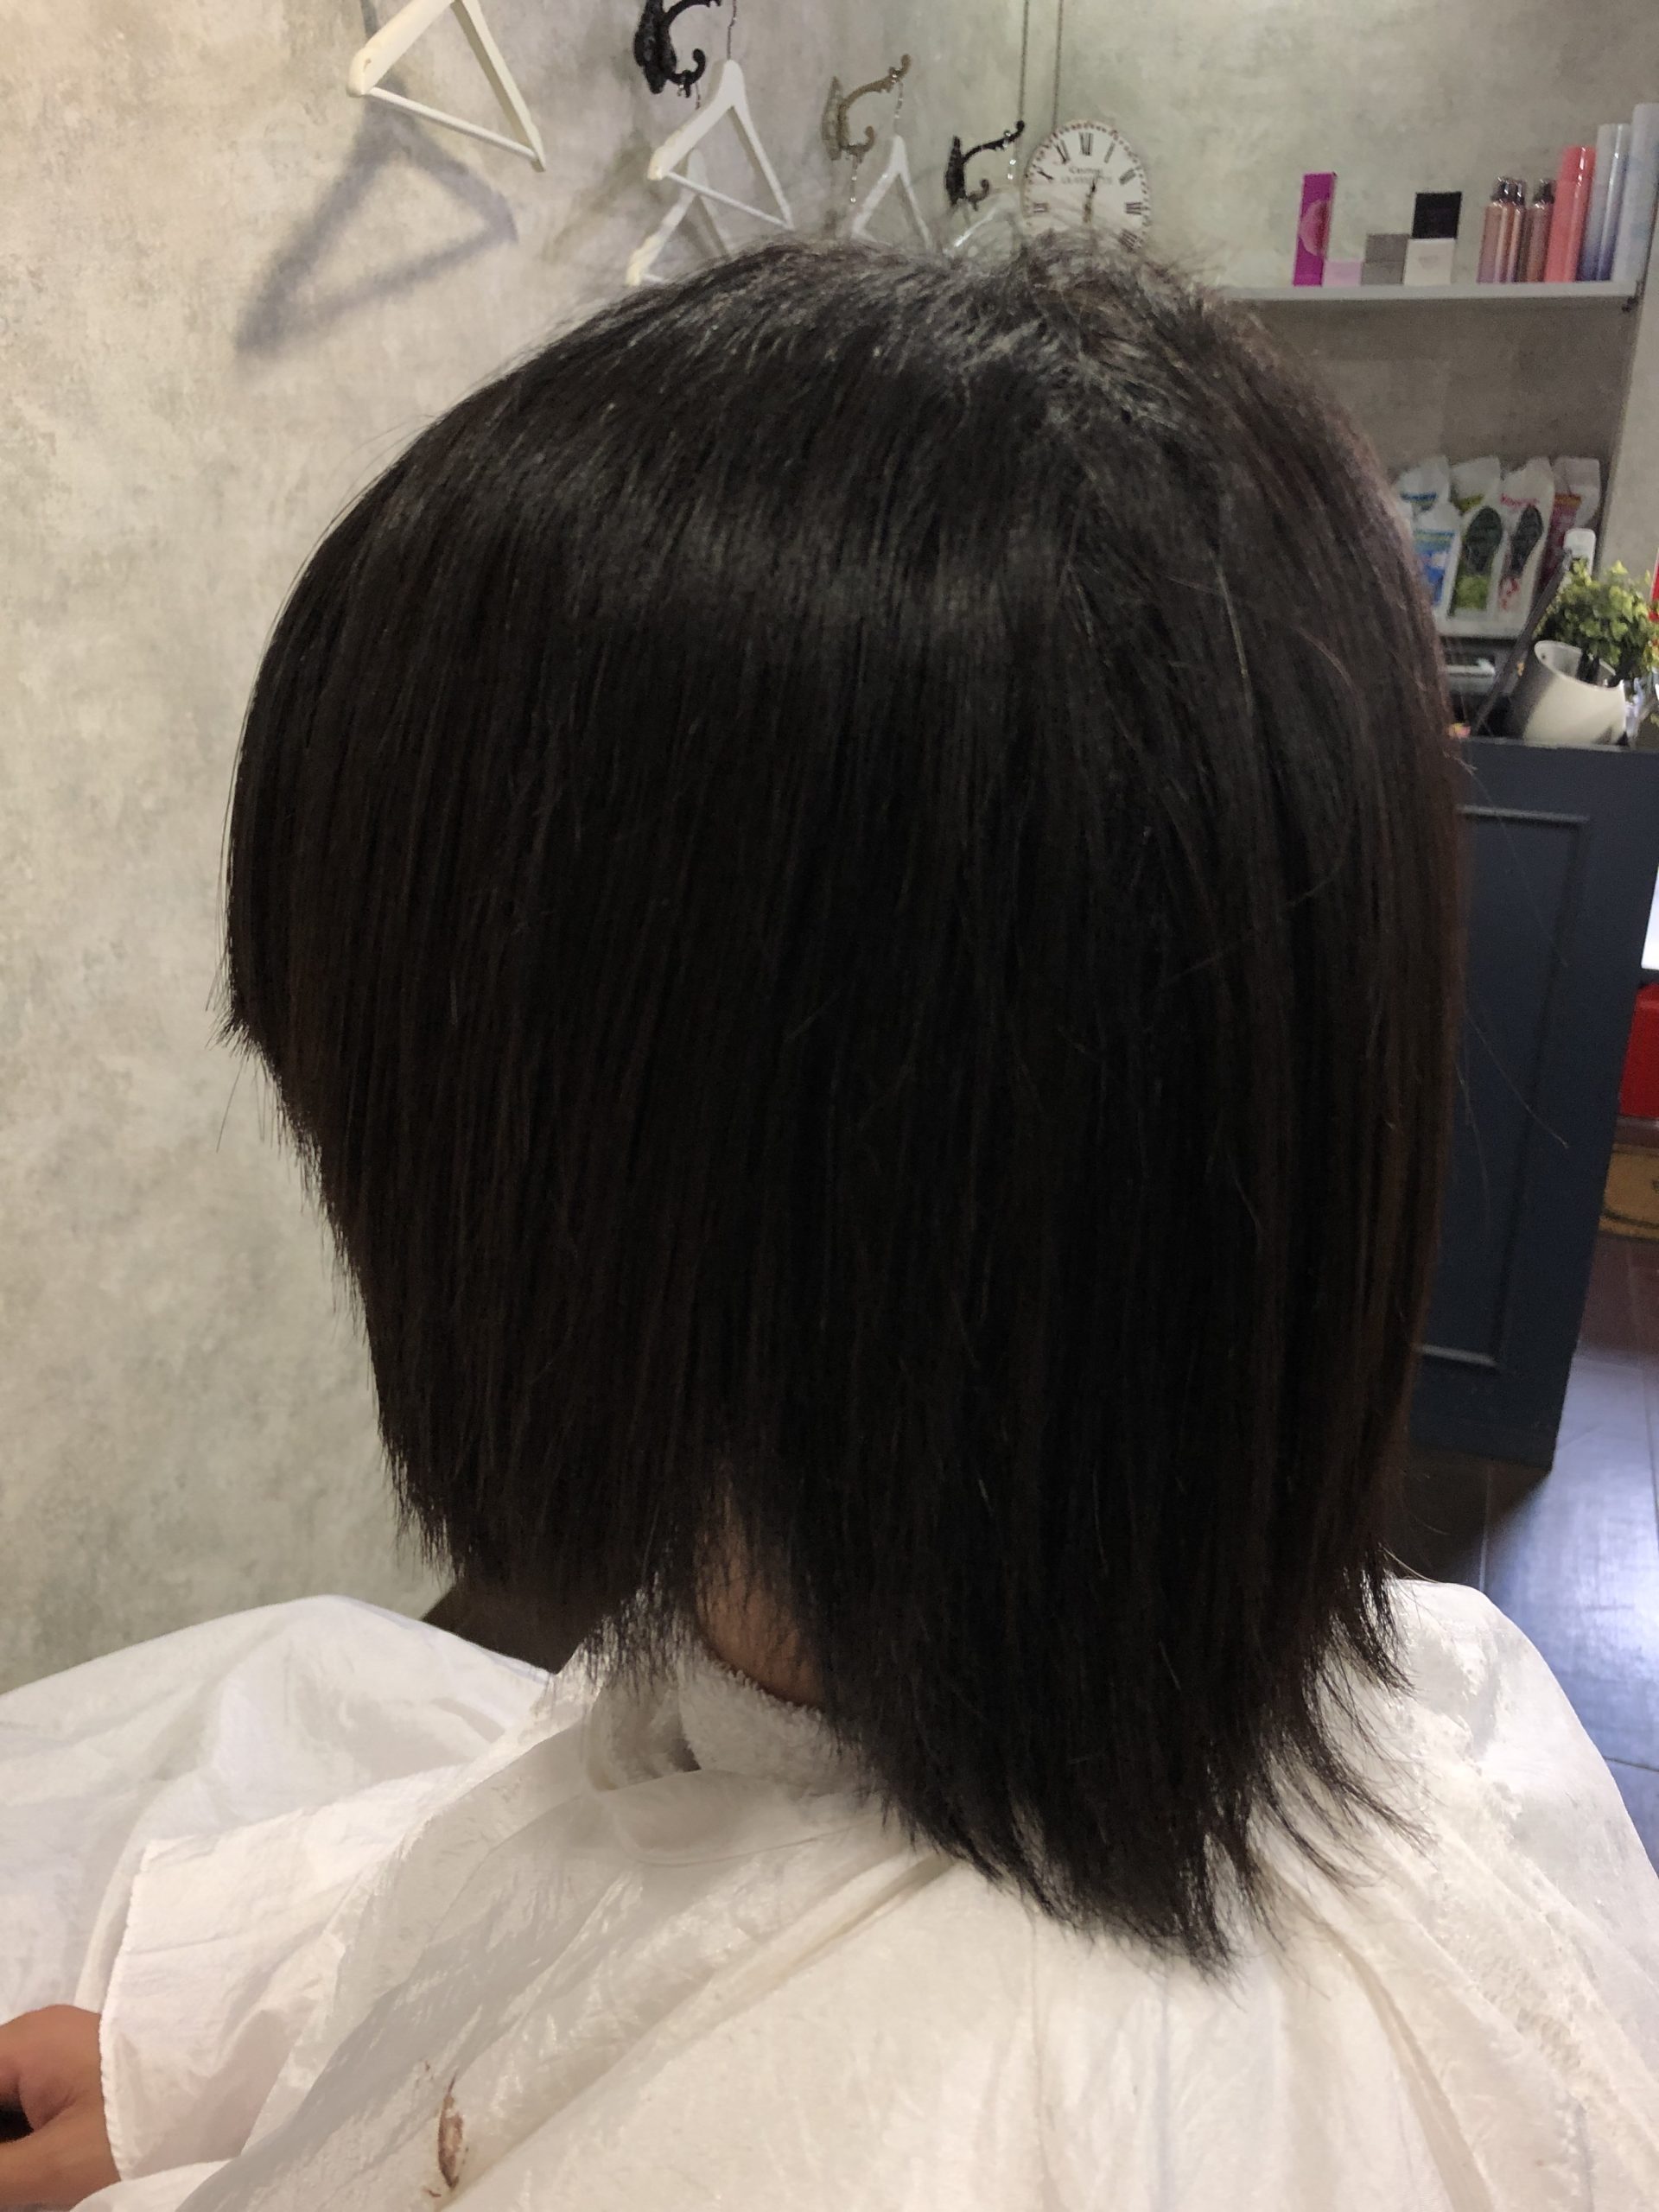 メンズ縮毛矯正 なぜか多いカットが下手な美容師 大阪で縮毛矯正が人気の美容室 Charm Hair Resort